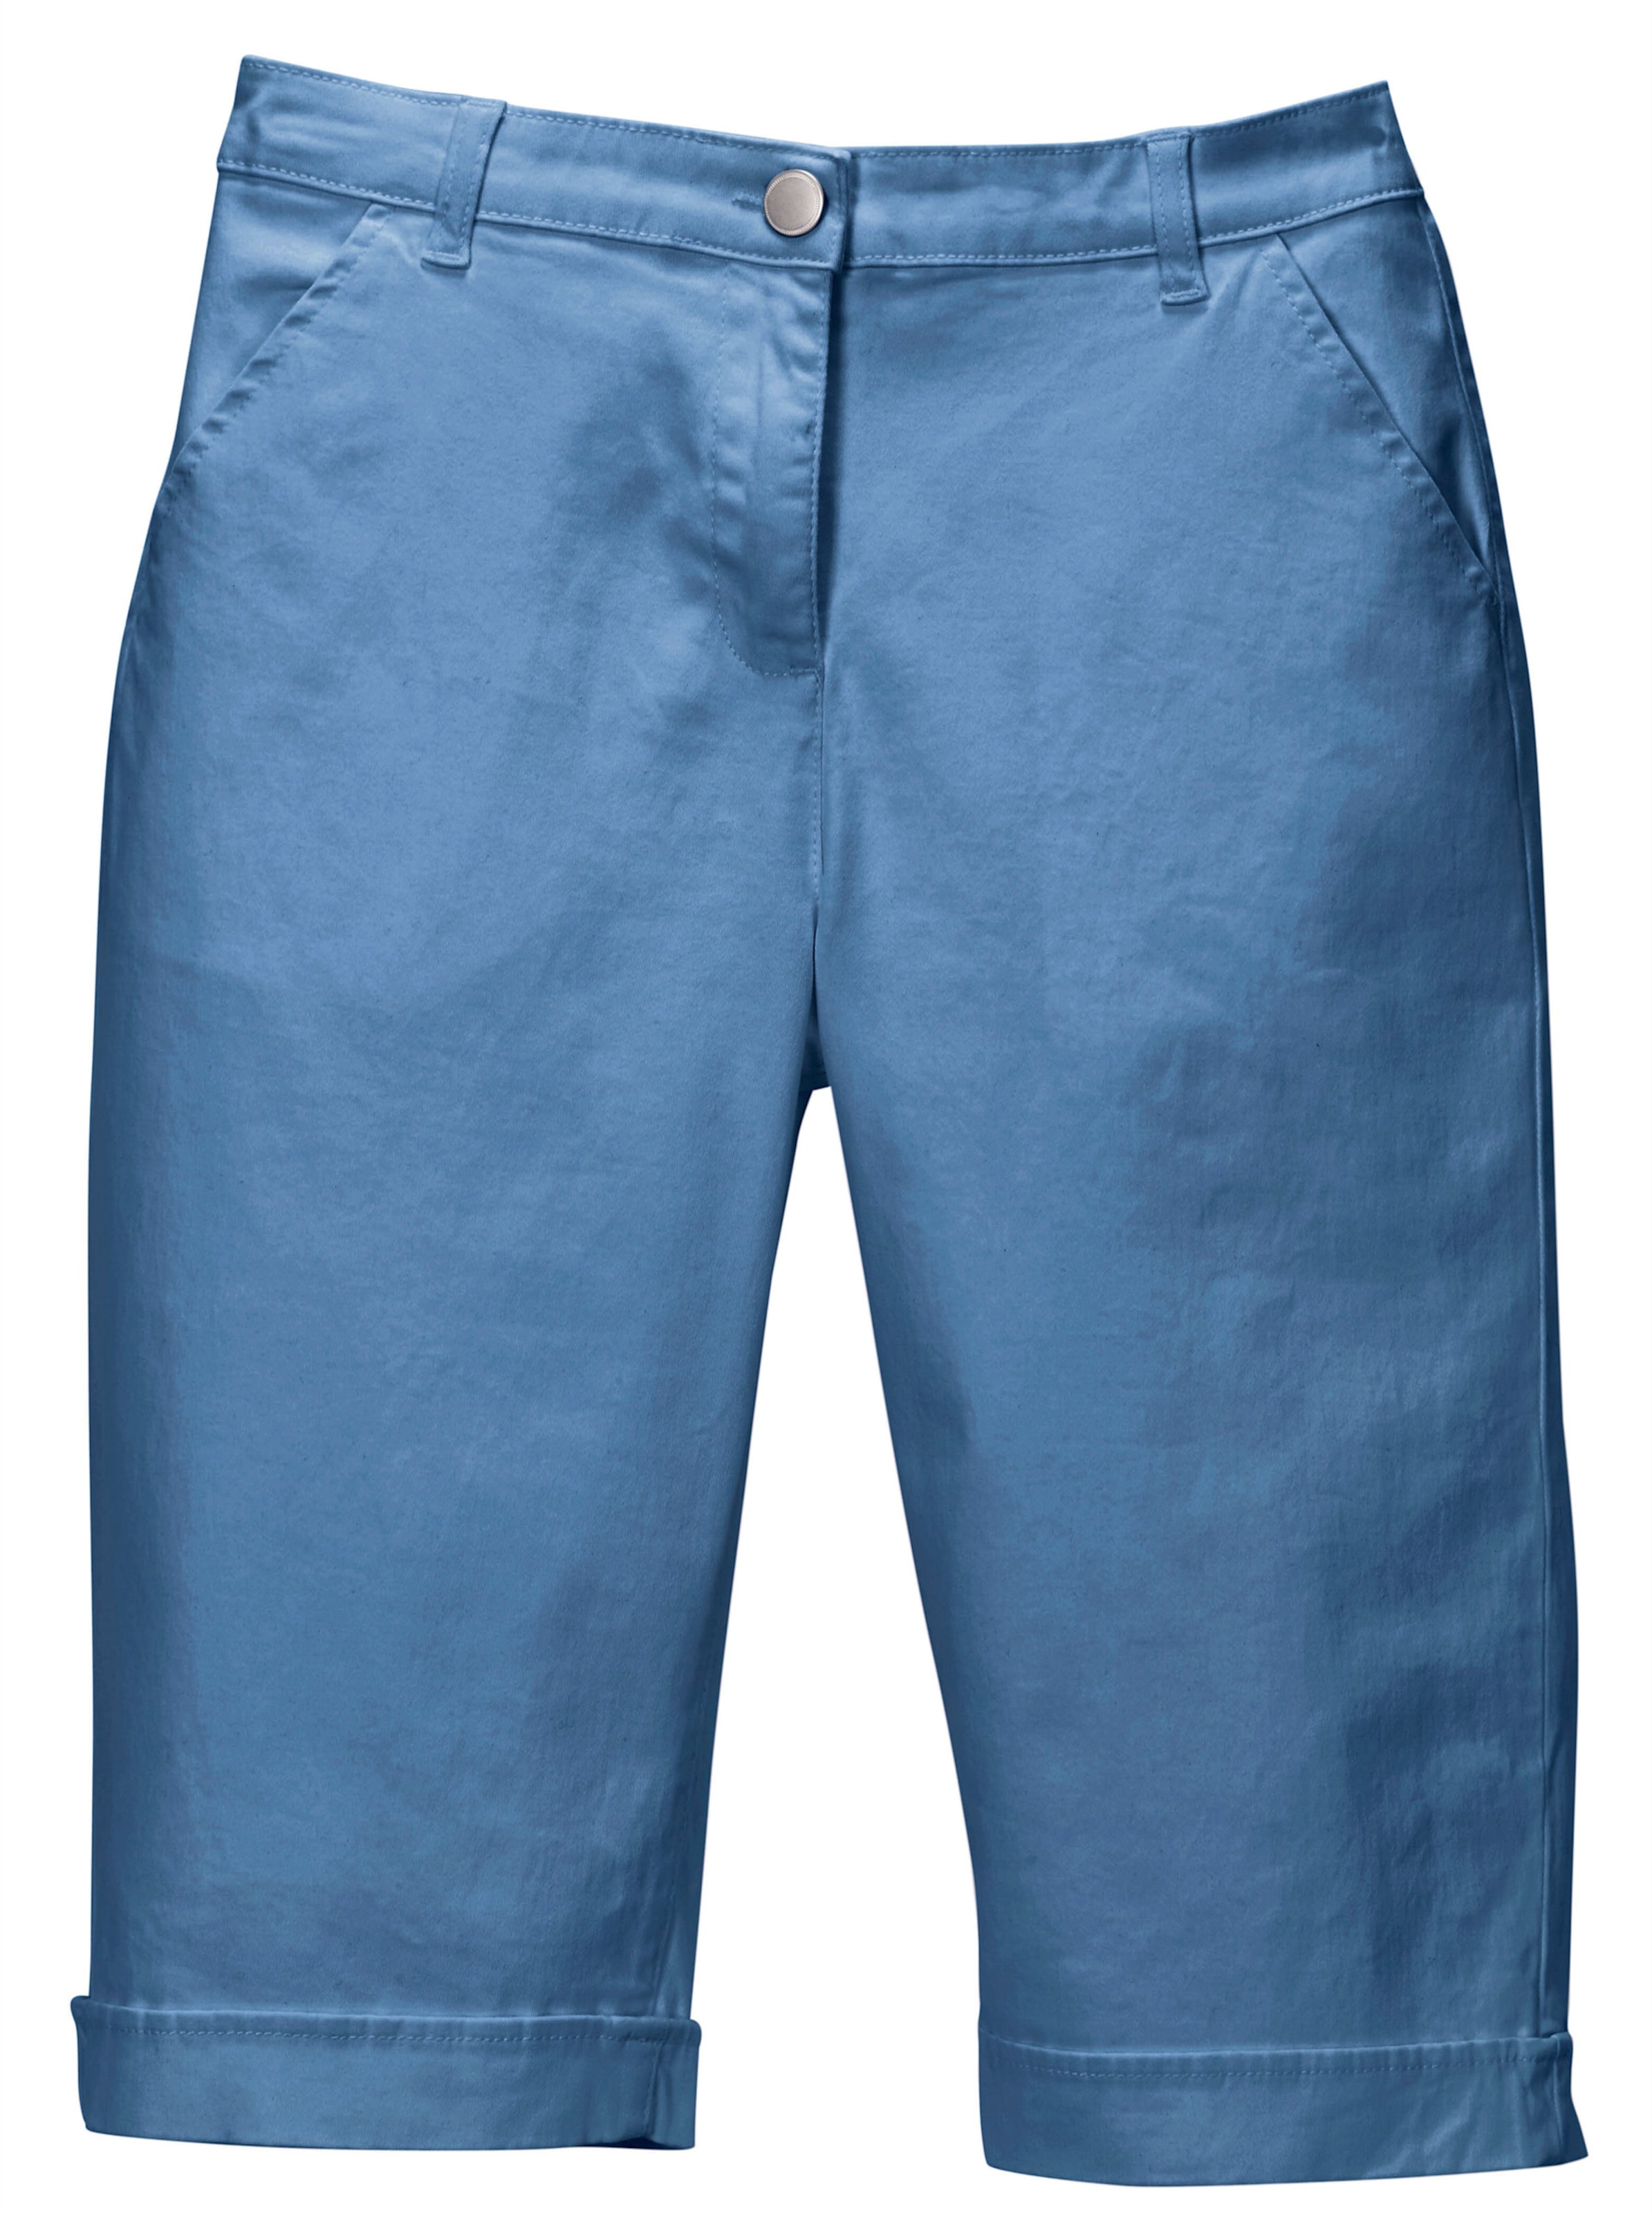 mit Schlaufen günstig Kaufen-Jeansbermudas in blau von heine. Jeansbermudas in blau von heine <![CDATA[Lässige Jeans-Bermudas in aktuellen Sommerfarben. Mit rückwärtigem Dehnbund, Gürtelschlaufen sowie Knopf und Reißverschluss. 2 Taschen vorne, 2 imitierte Gesäßtaschen. Am Sau